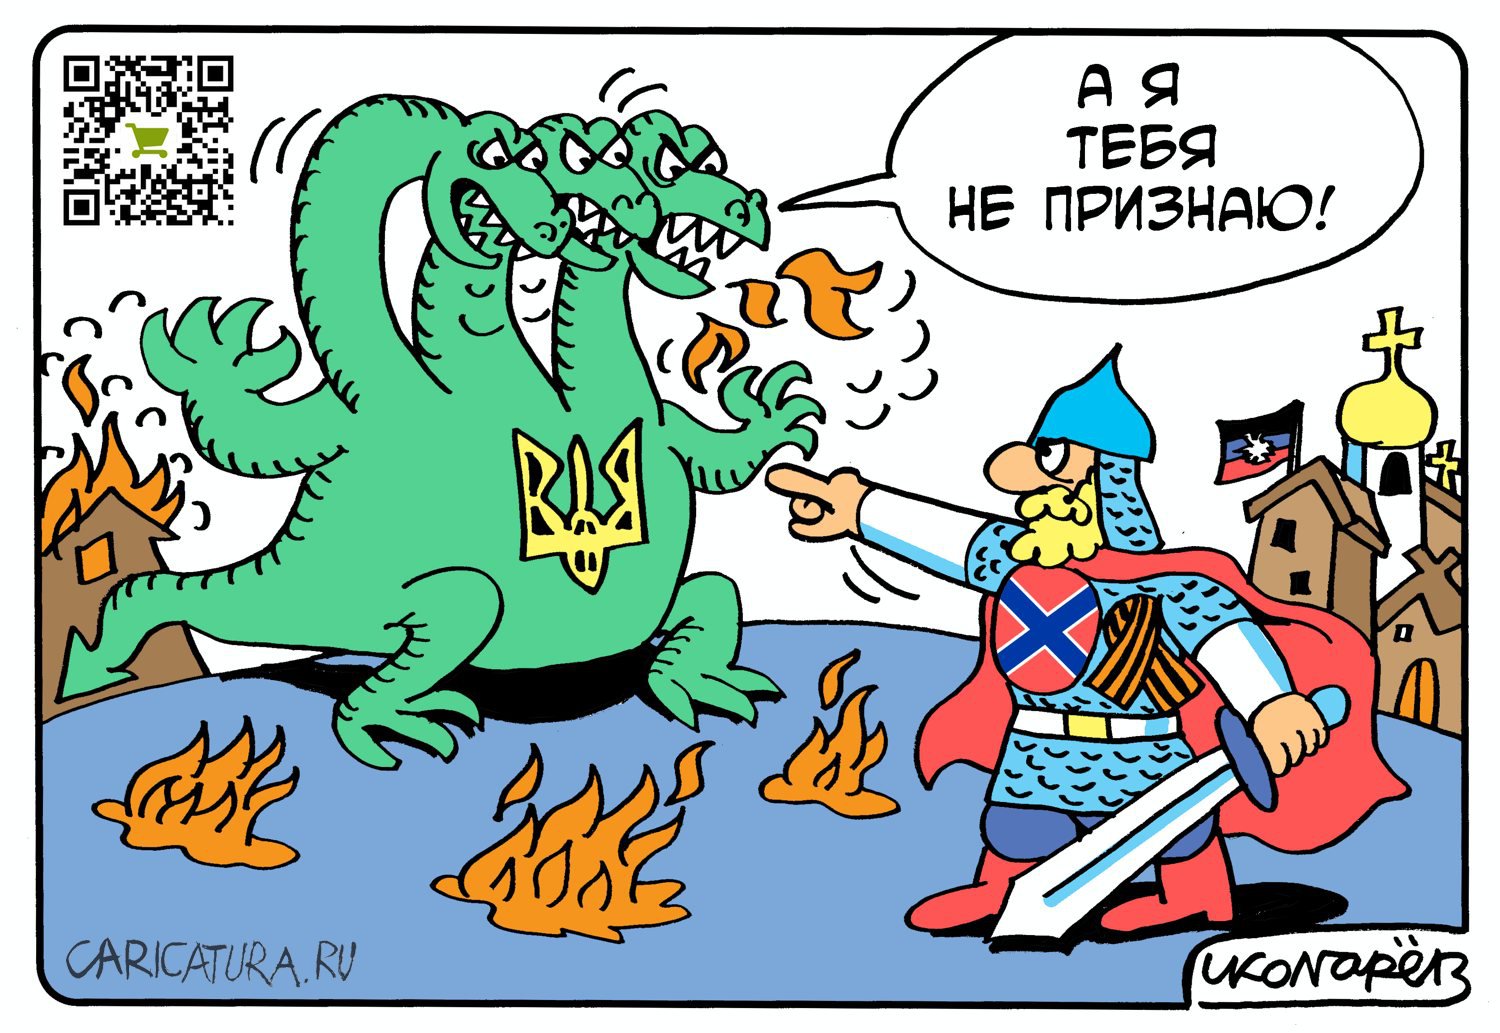 Карикатура "Украина и ДНР", Игорь Колгарев